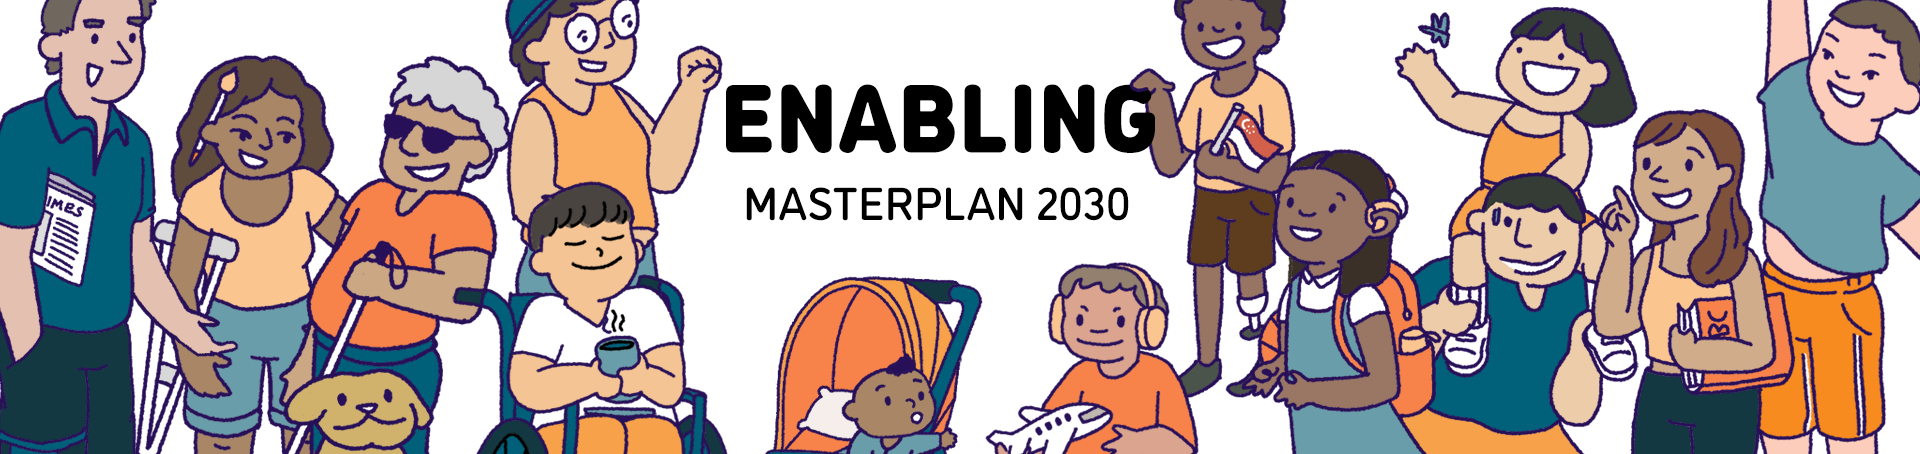 Enabling Masterplan hero banner